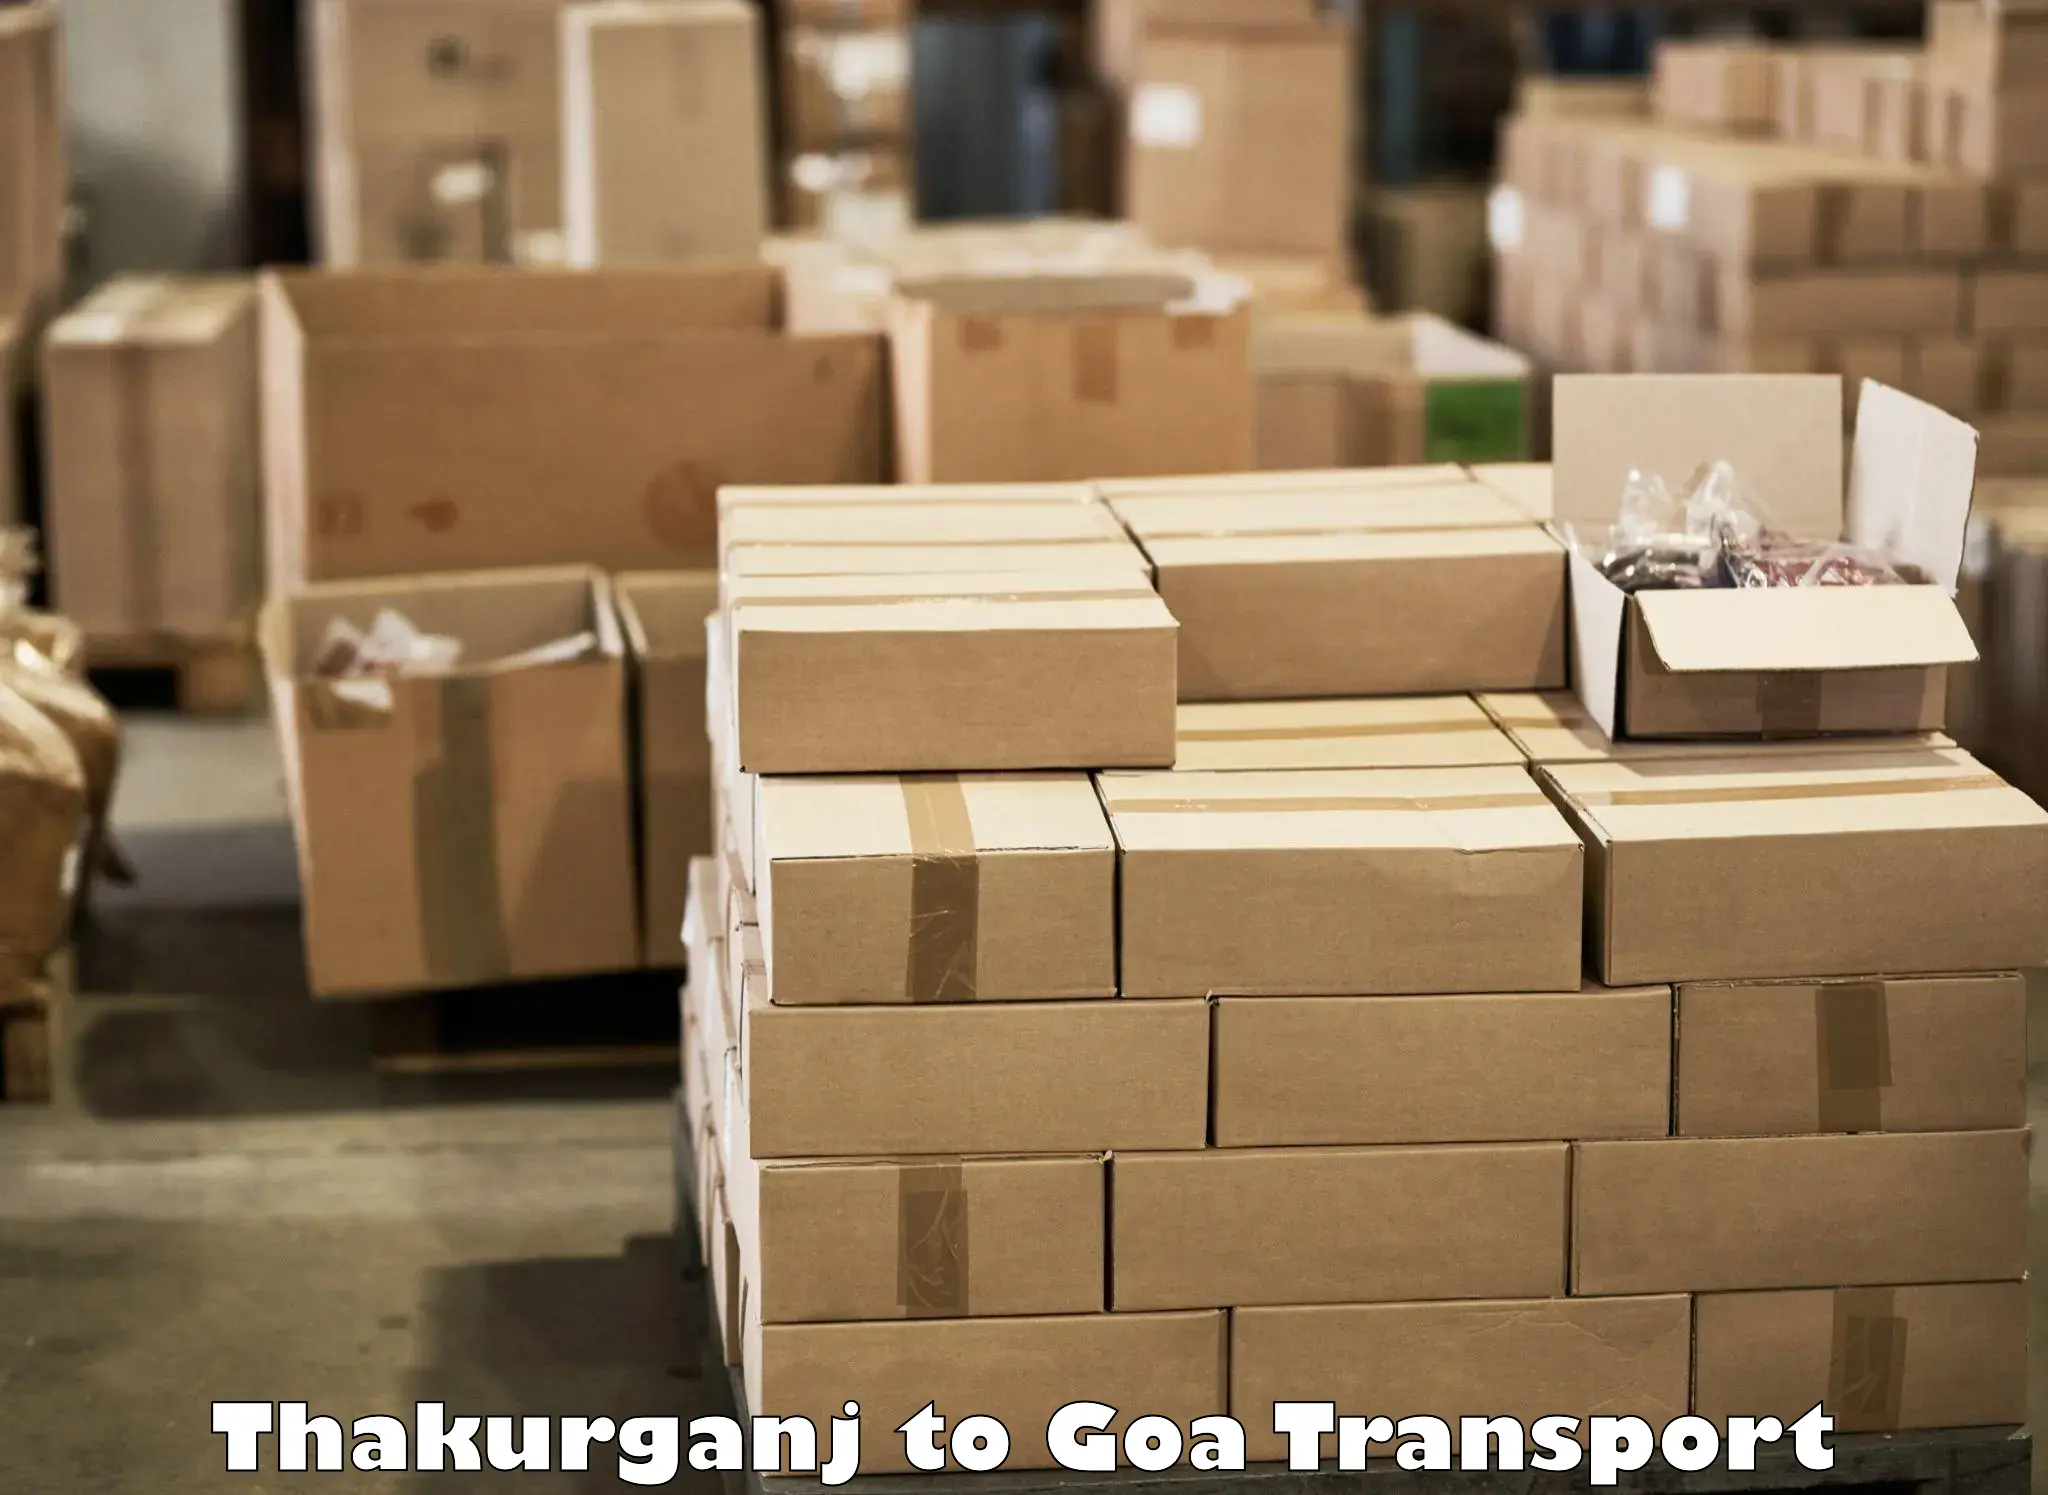 Air freight transport services Thakurganj to Goa